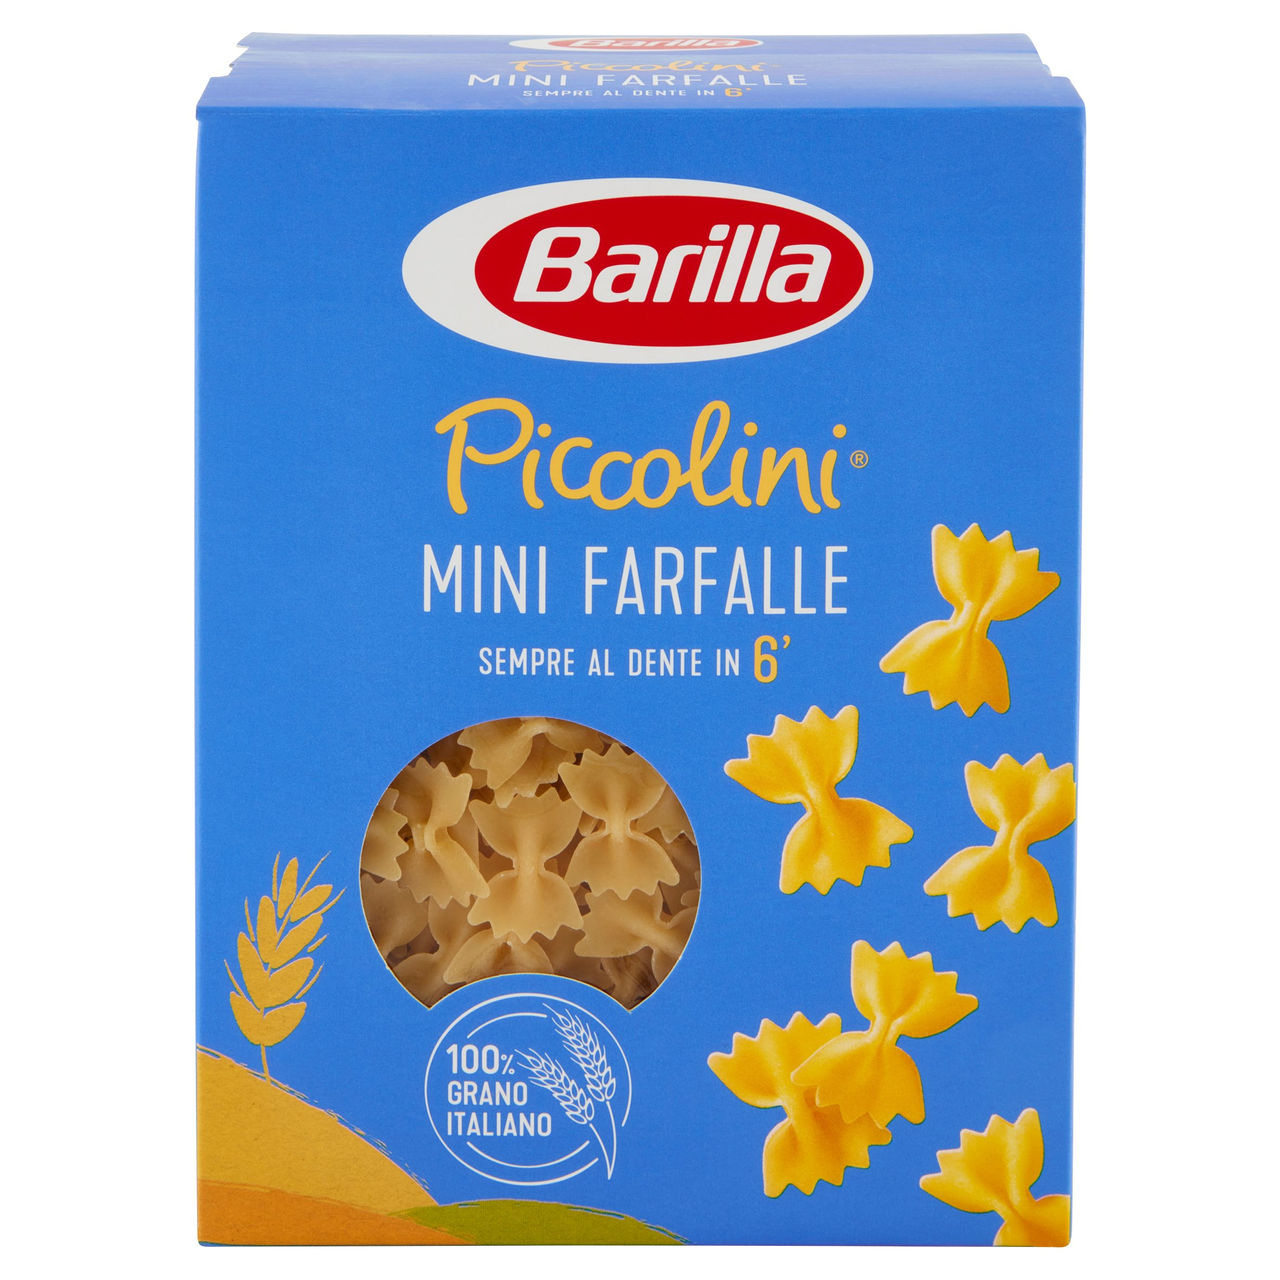 Barilla Pasta Piccolini Mini Farfalle 100% grano italiano 500 g